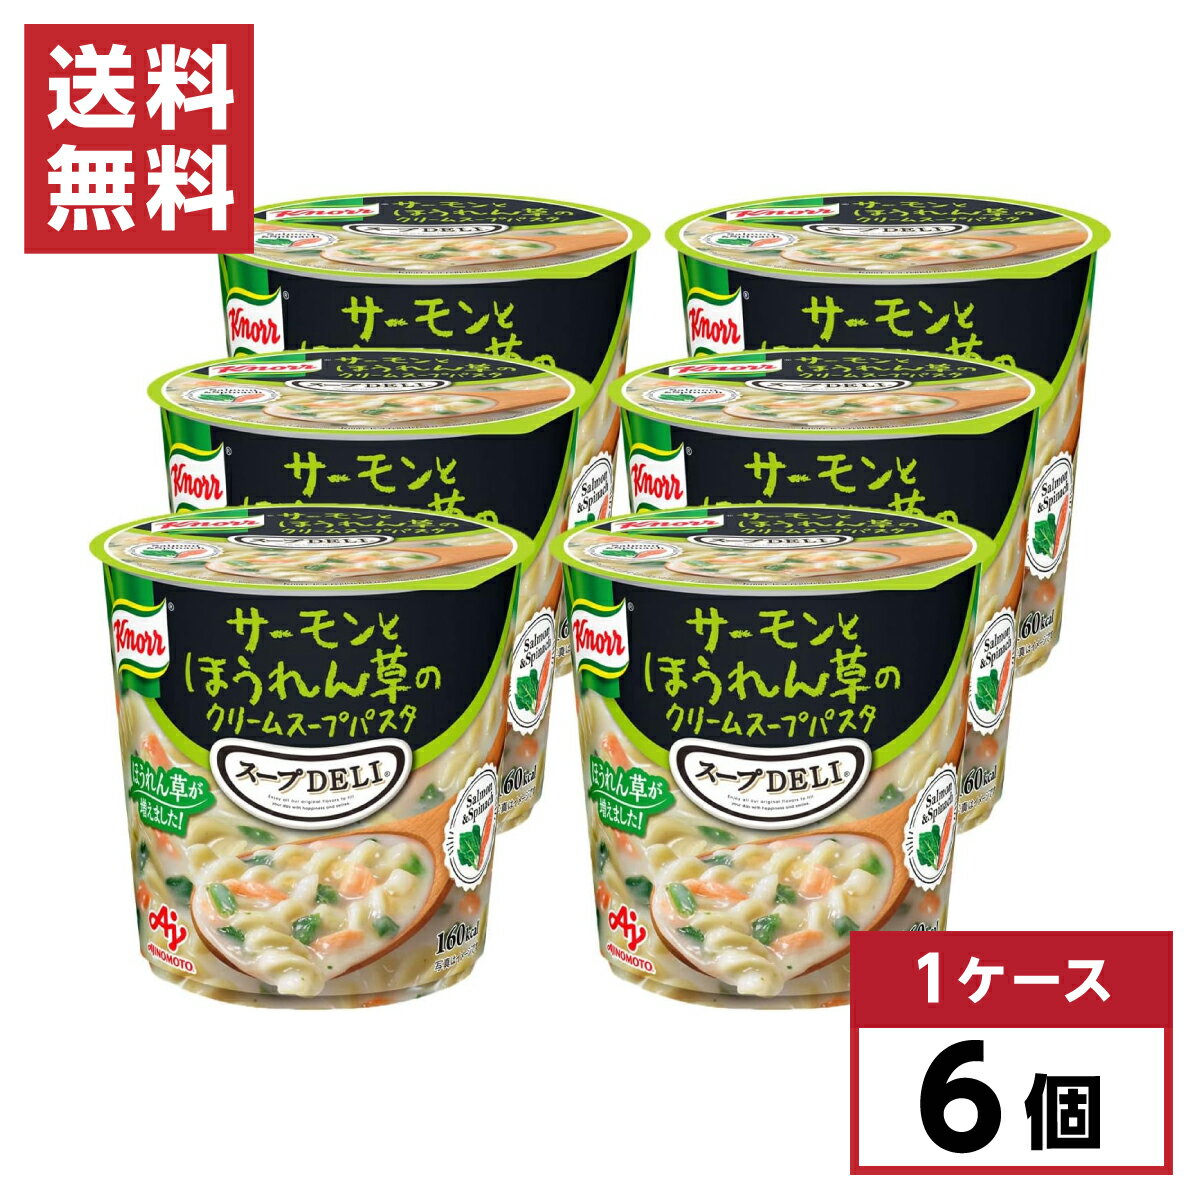 【まとめ買い】 味の素 クノール スープデリ サーモンとほうれん草のクリームスープパスタ 39.0g×6個 スープDELI カップスープ 箱買い 備蓄